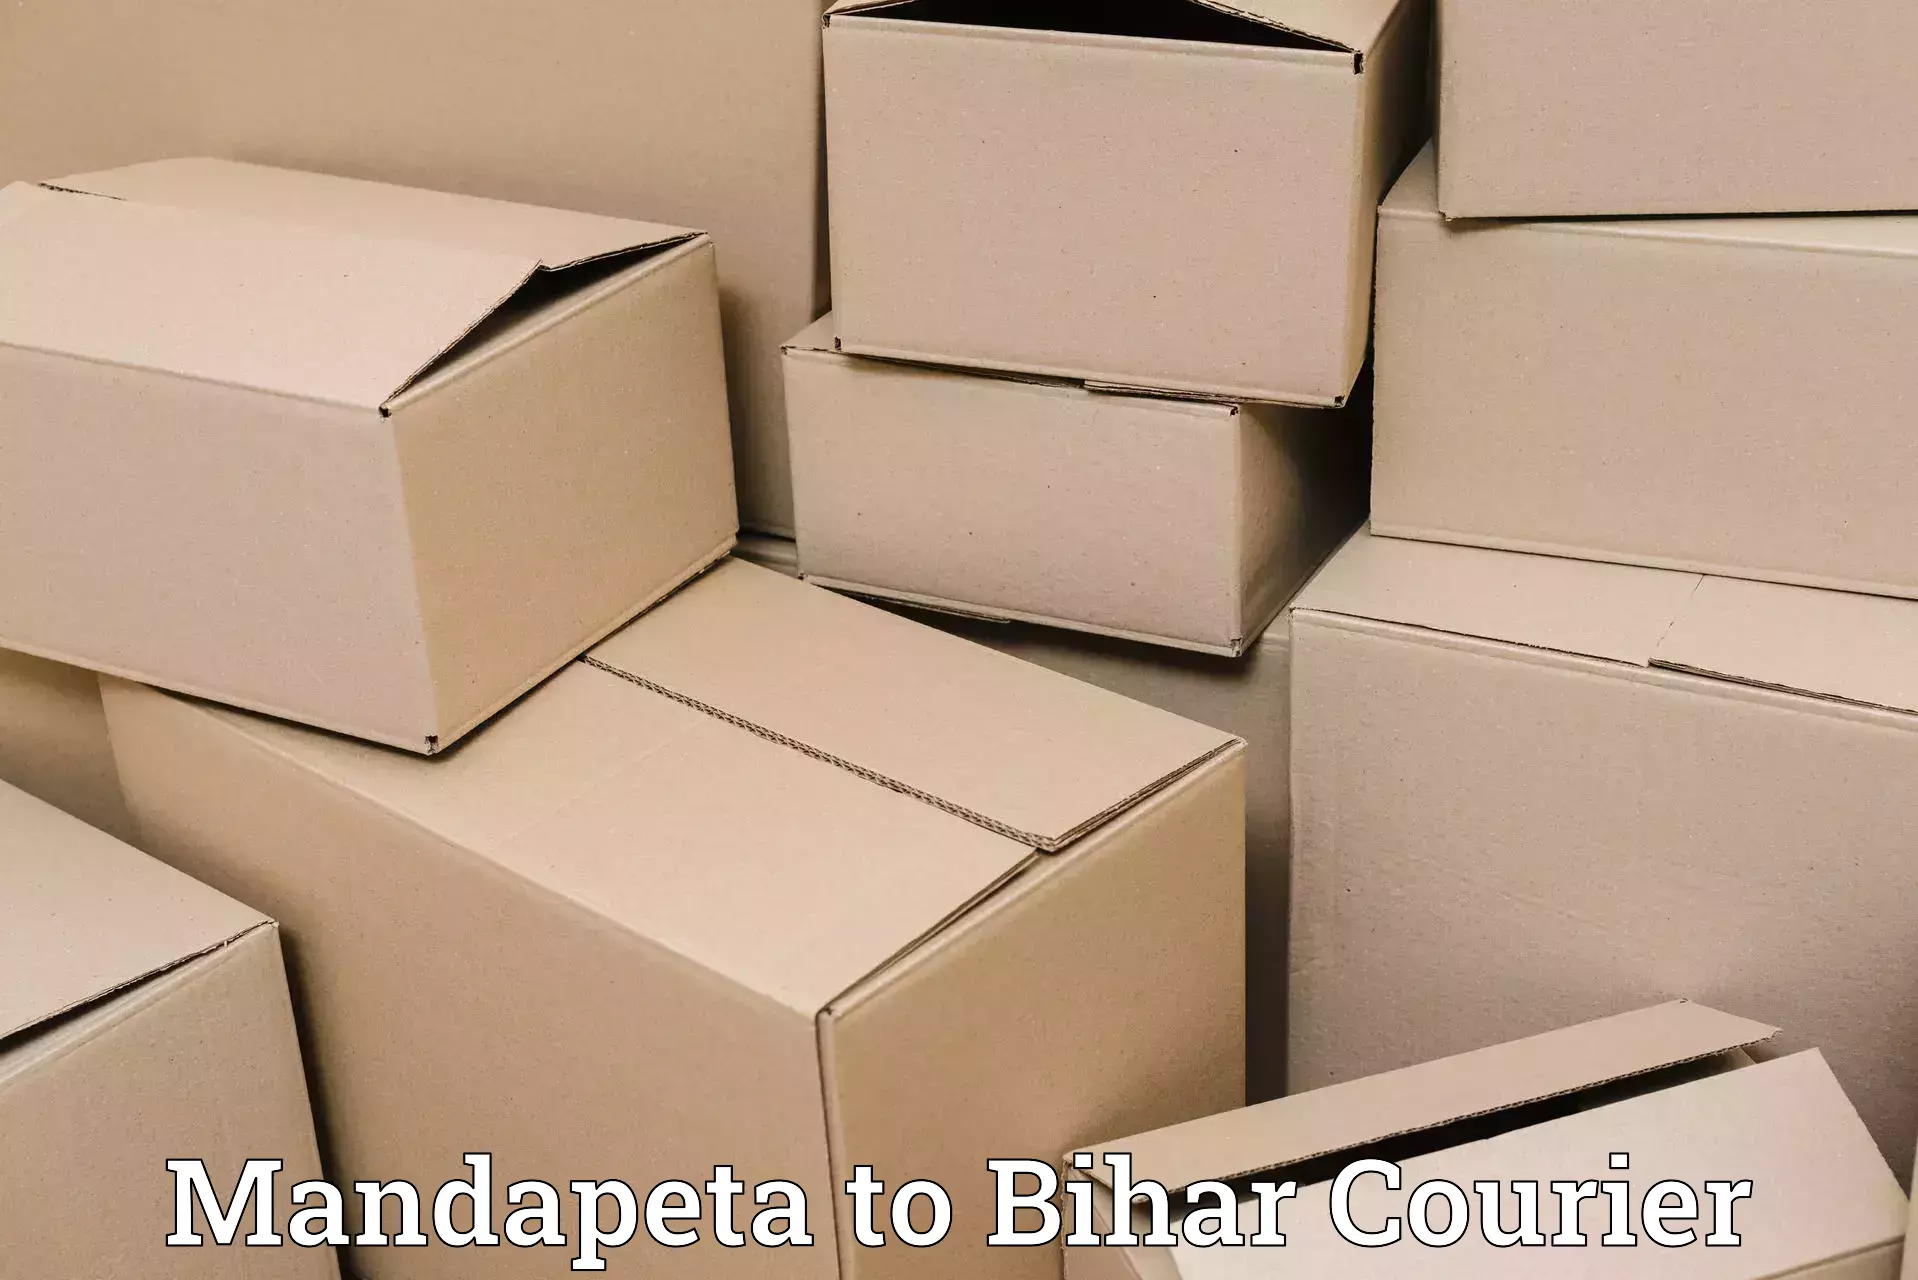 Digital courier platforms Mandapeta to Sahebpur Kamal